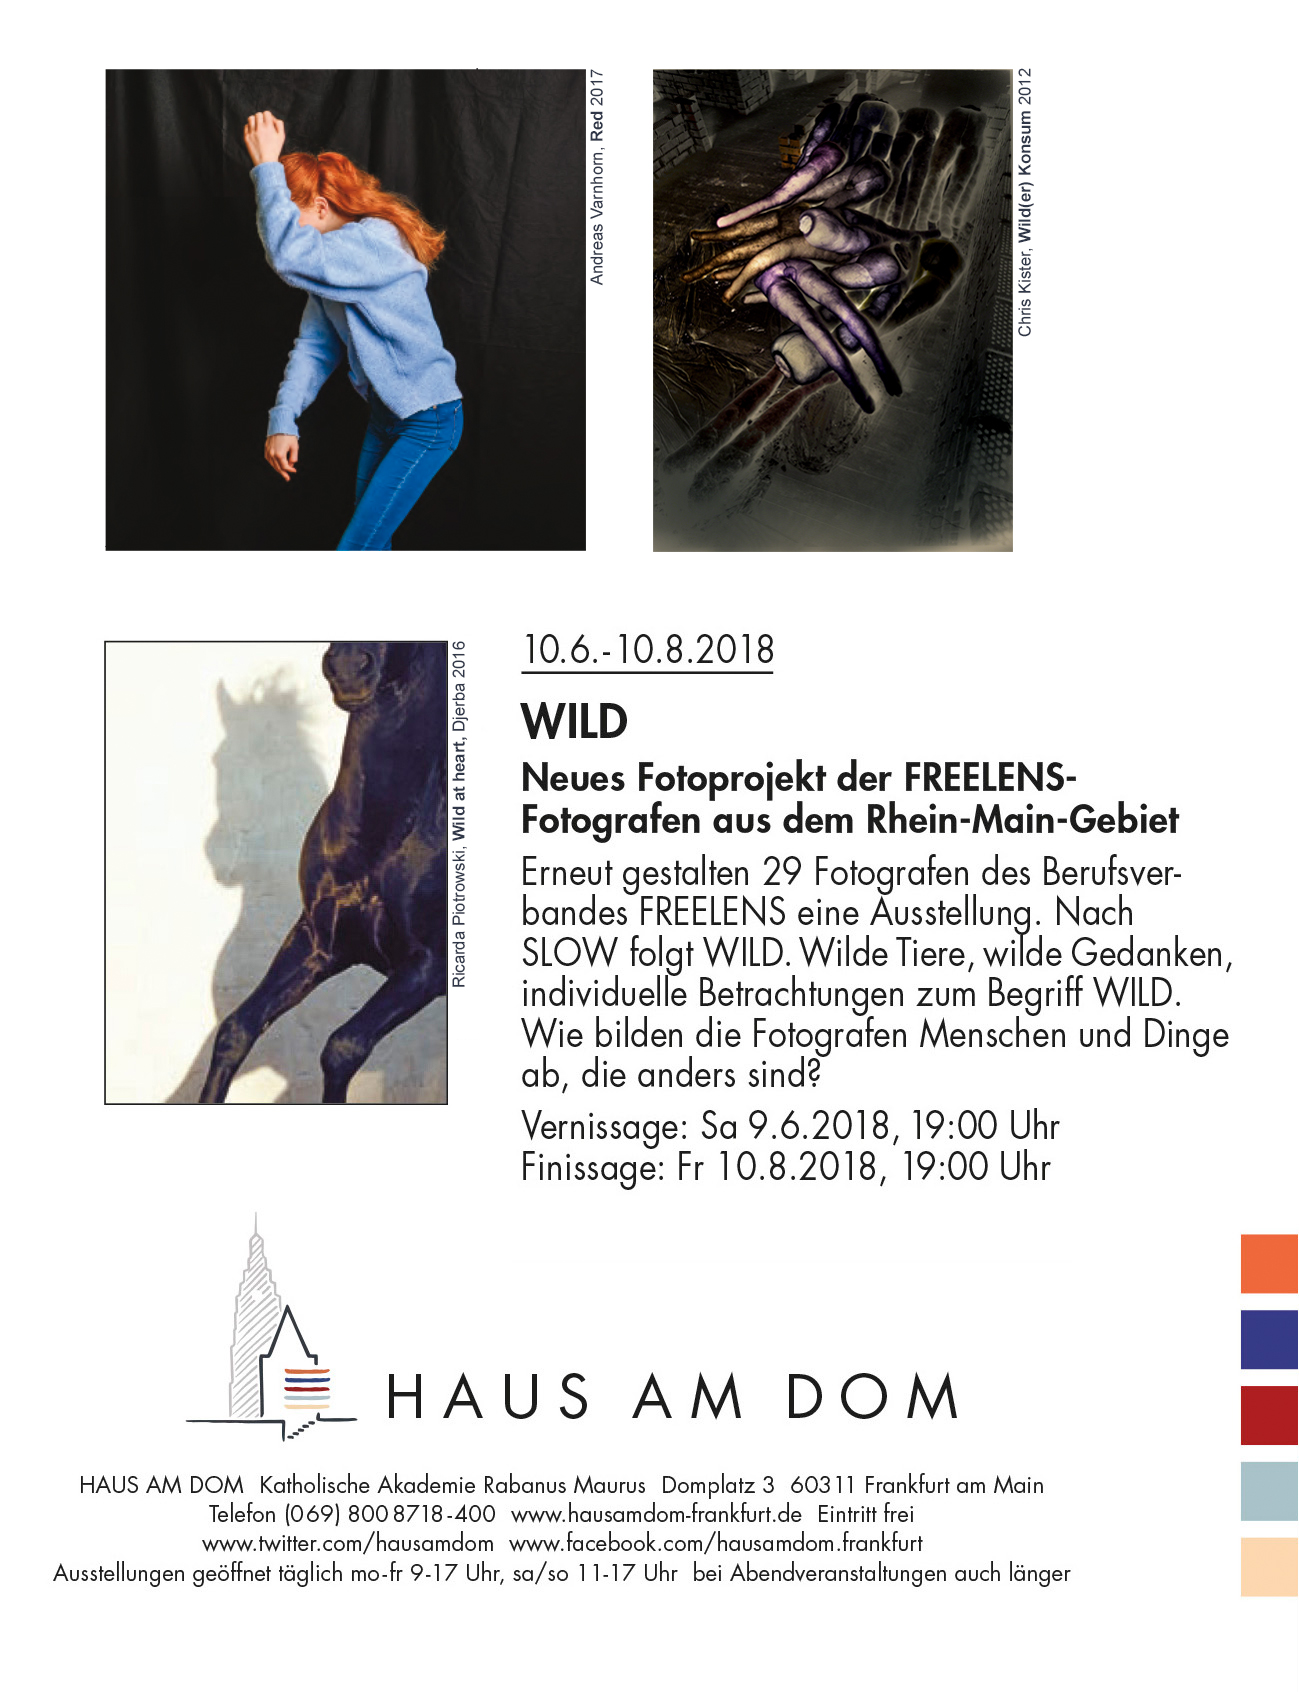 Chris Kister, Ausstellungsbeteiligung FREELENS Ausstellung "WILD" 2018, Frankfurt